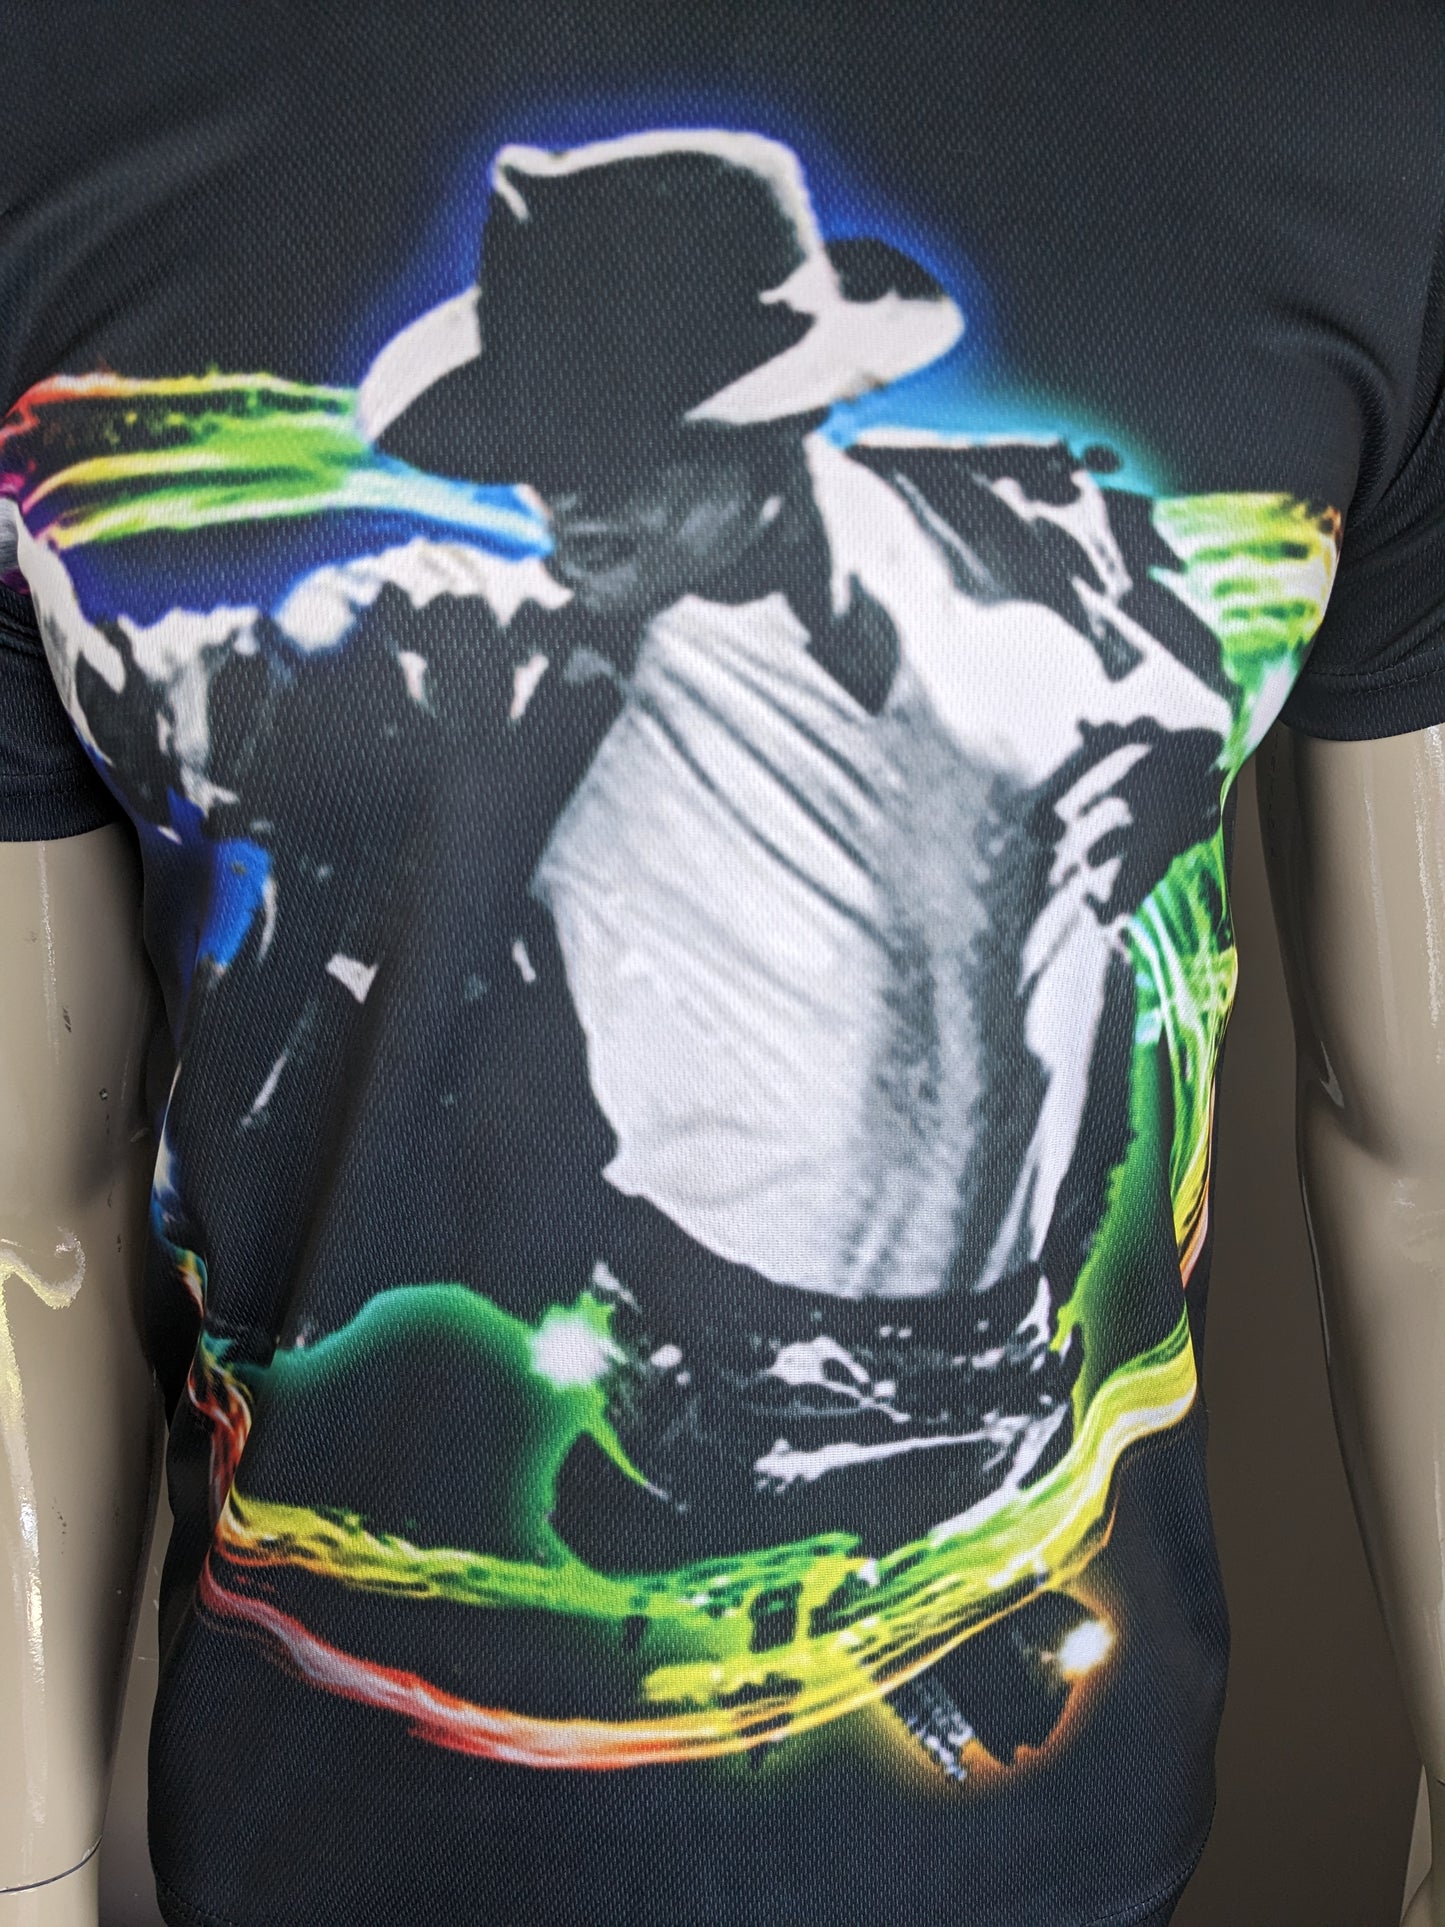 Micheal Jackson Stampa maglietta. Nero con stampa colorata. Size S. Allungamento.